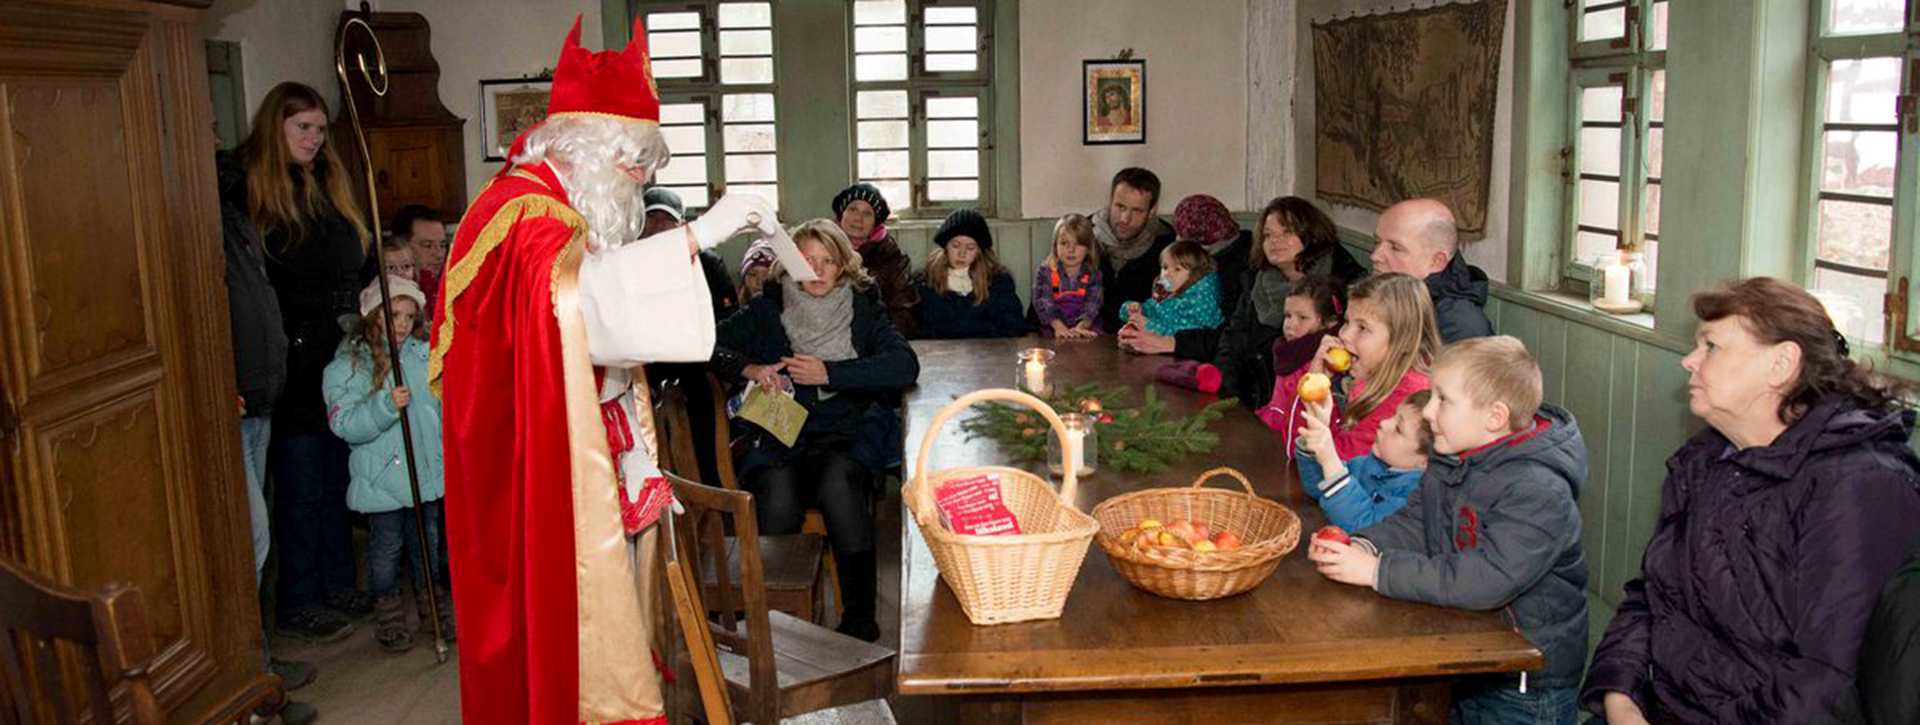 Nikolaus im roten Mantel spricht mit Kindern, die an einem Tisch sitzen